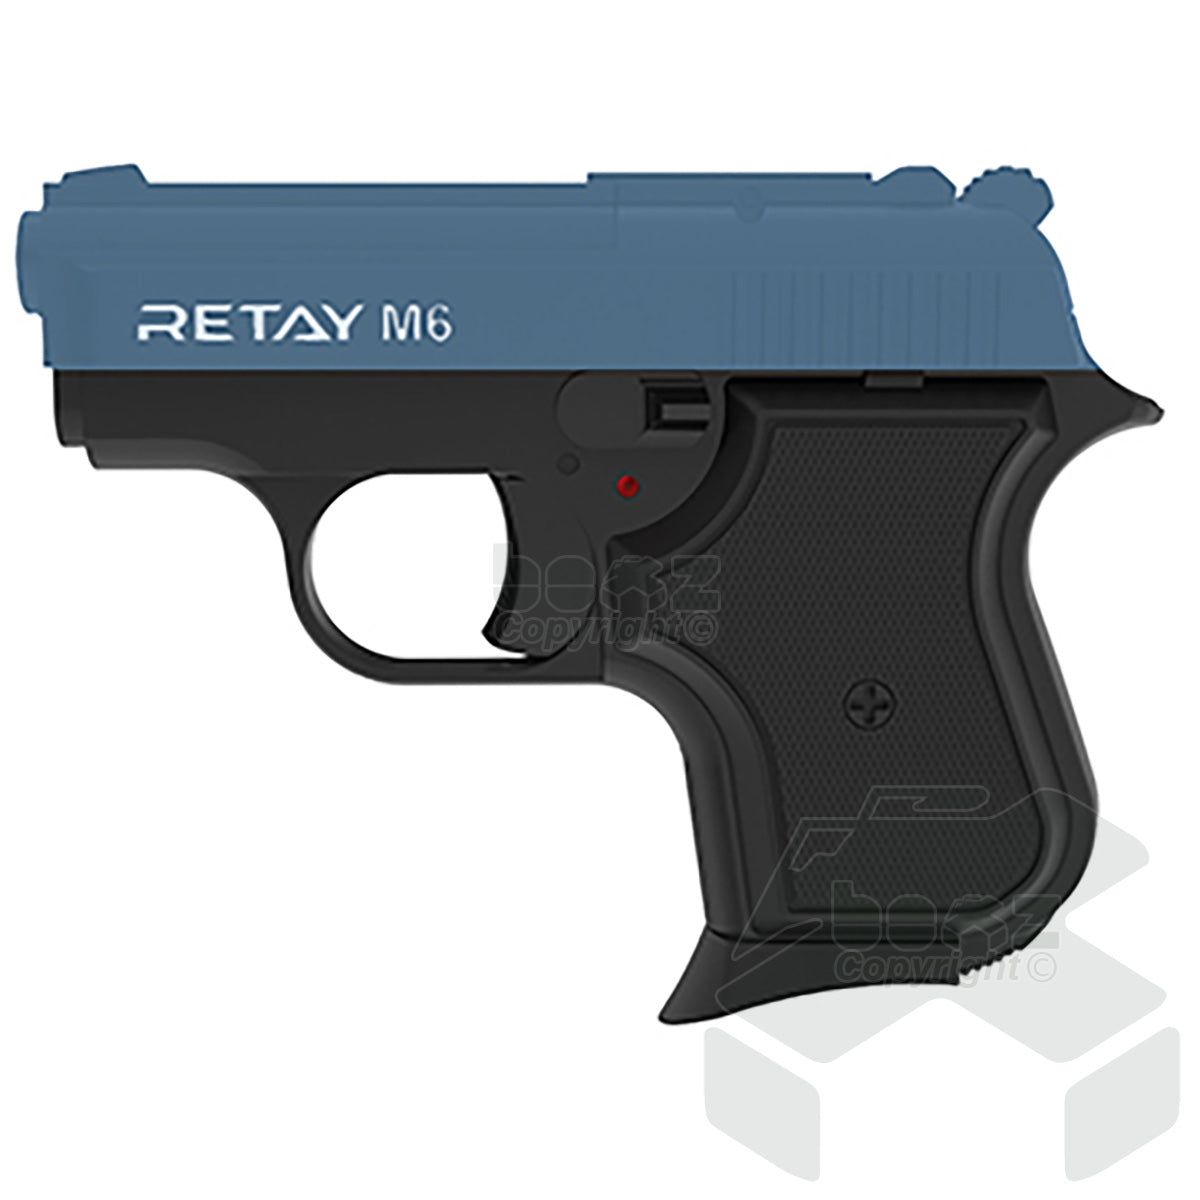 Retay M6  Blank Firing Pistol - 8mm  - Black